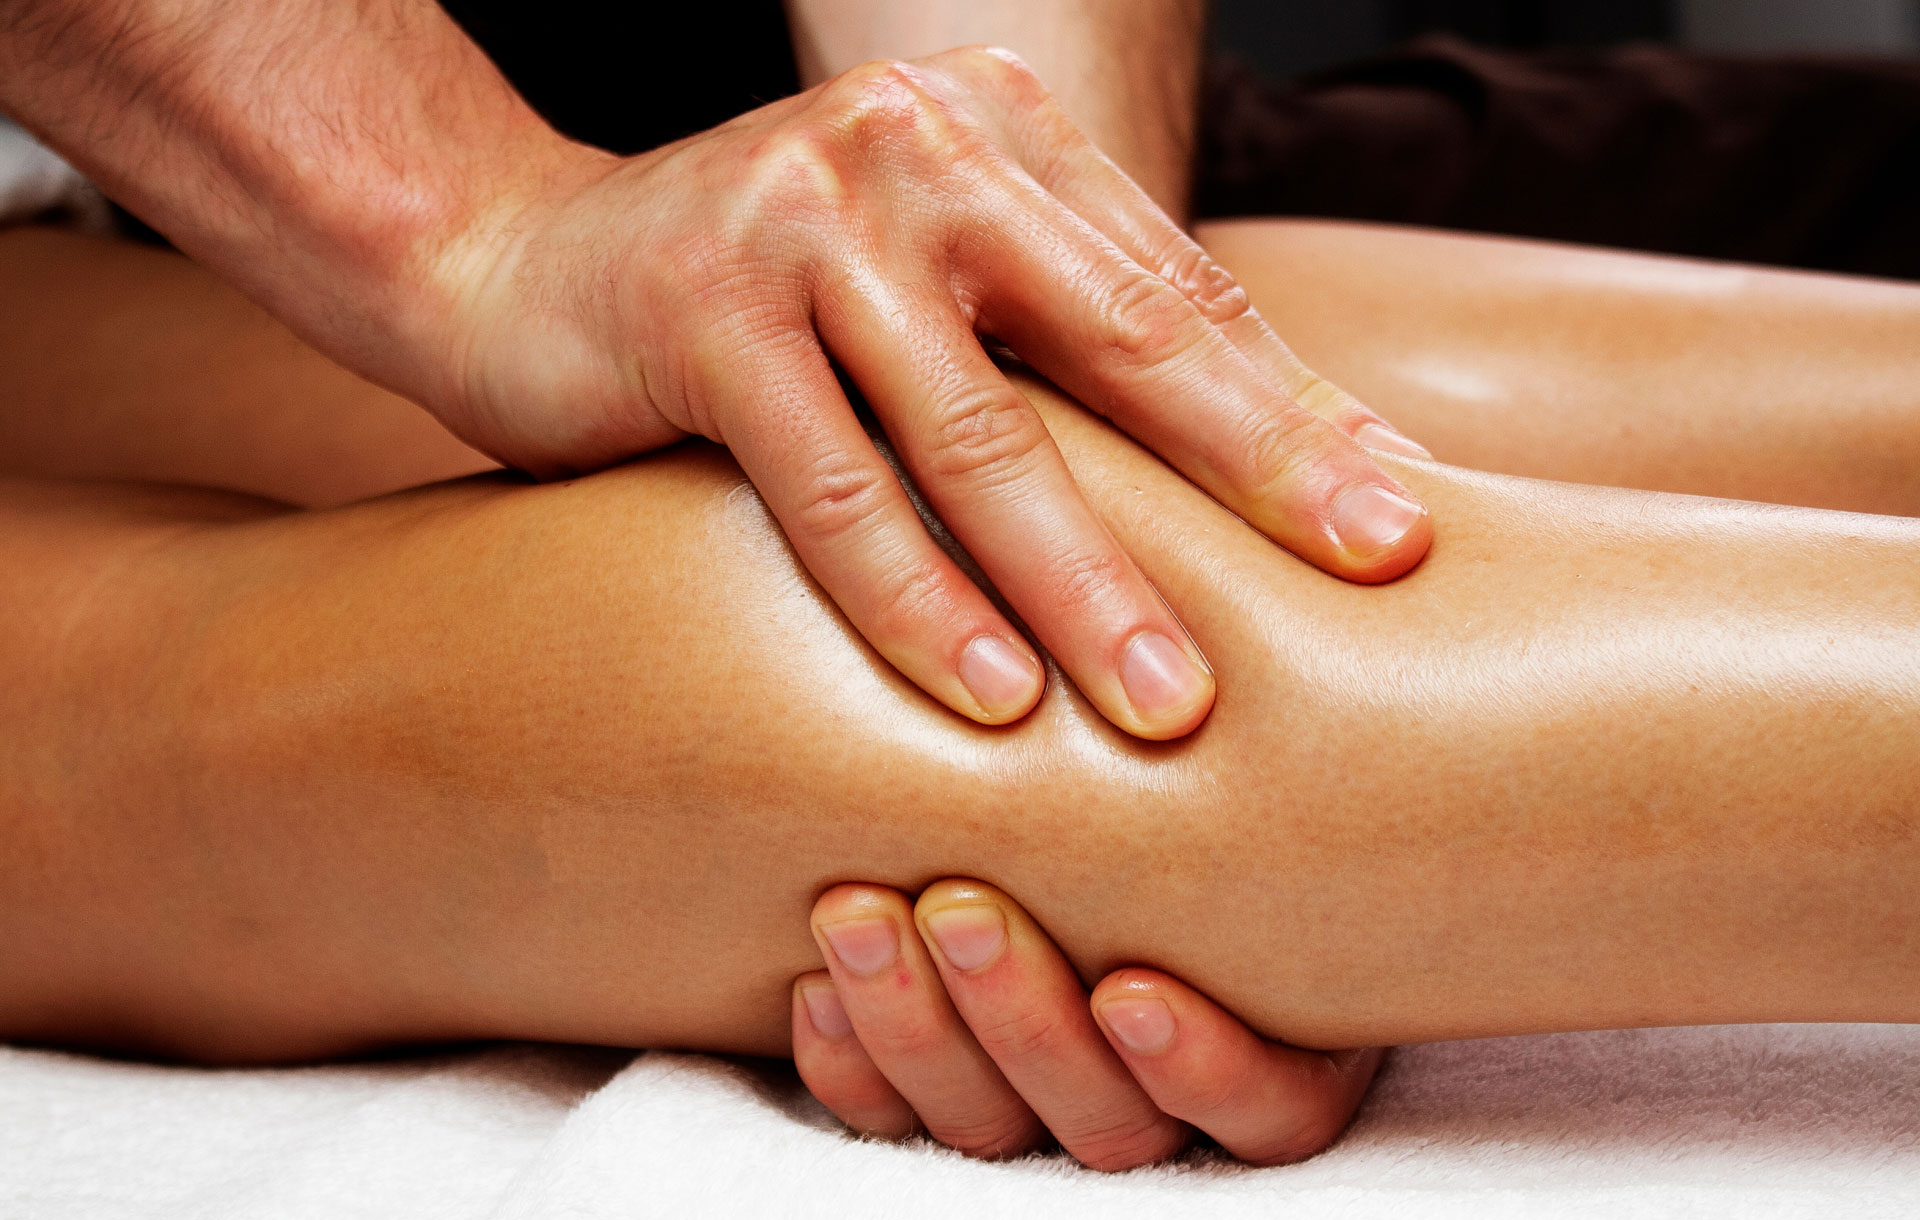 Gently massage. Лимфодренажный массаж тела. Массаж лимфодренажный ручной. Лимфодренажный массаж ног. Полный массаж тела.